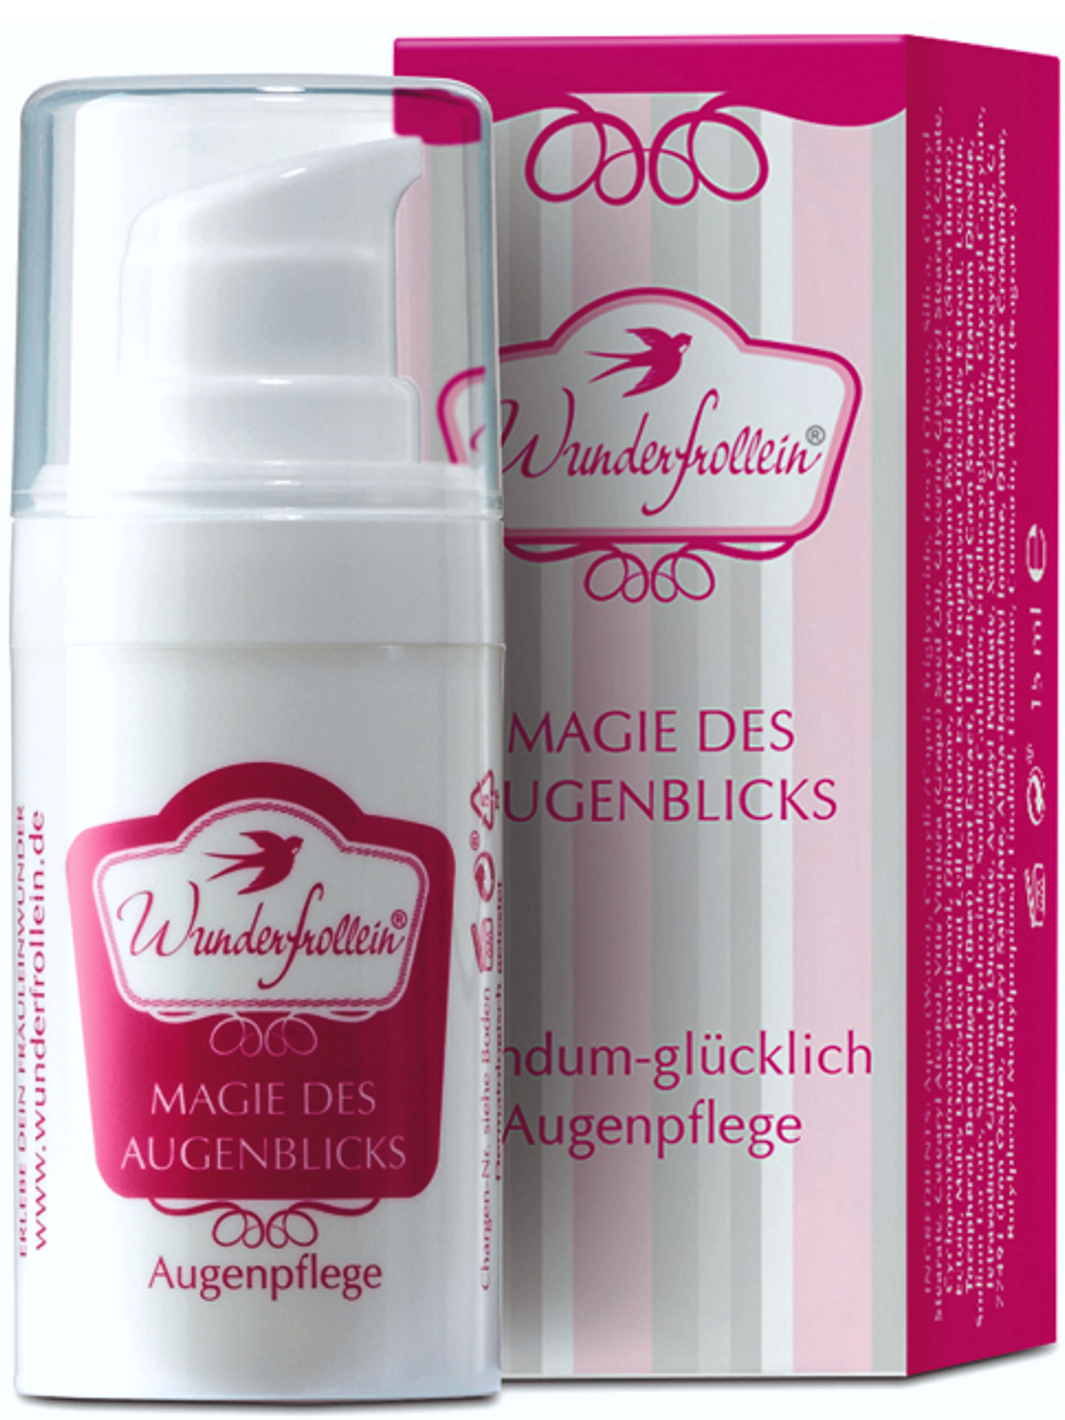 MAGIE DES AUGENBLICKS - Rundum-glücklich Augenpflege, 15 ml